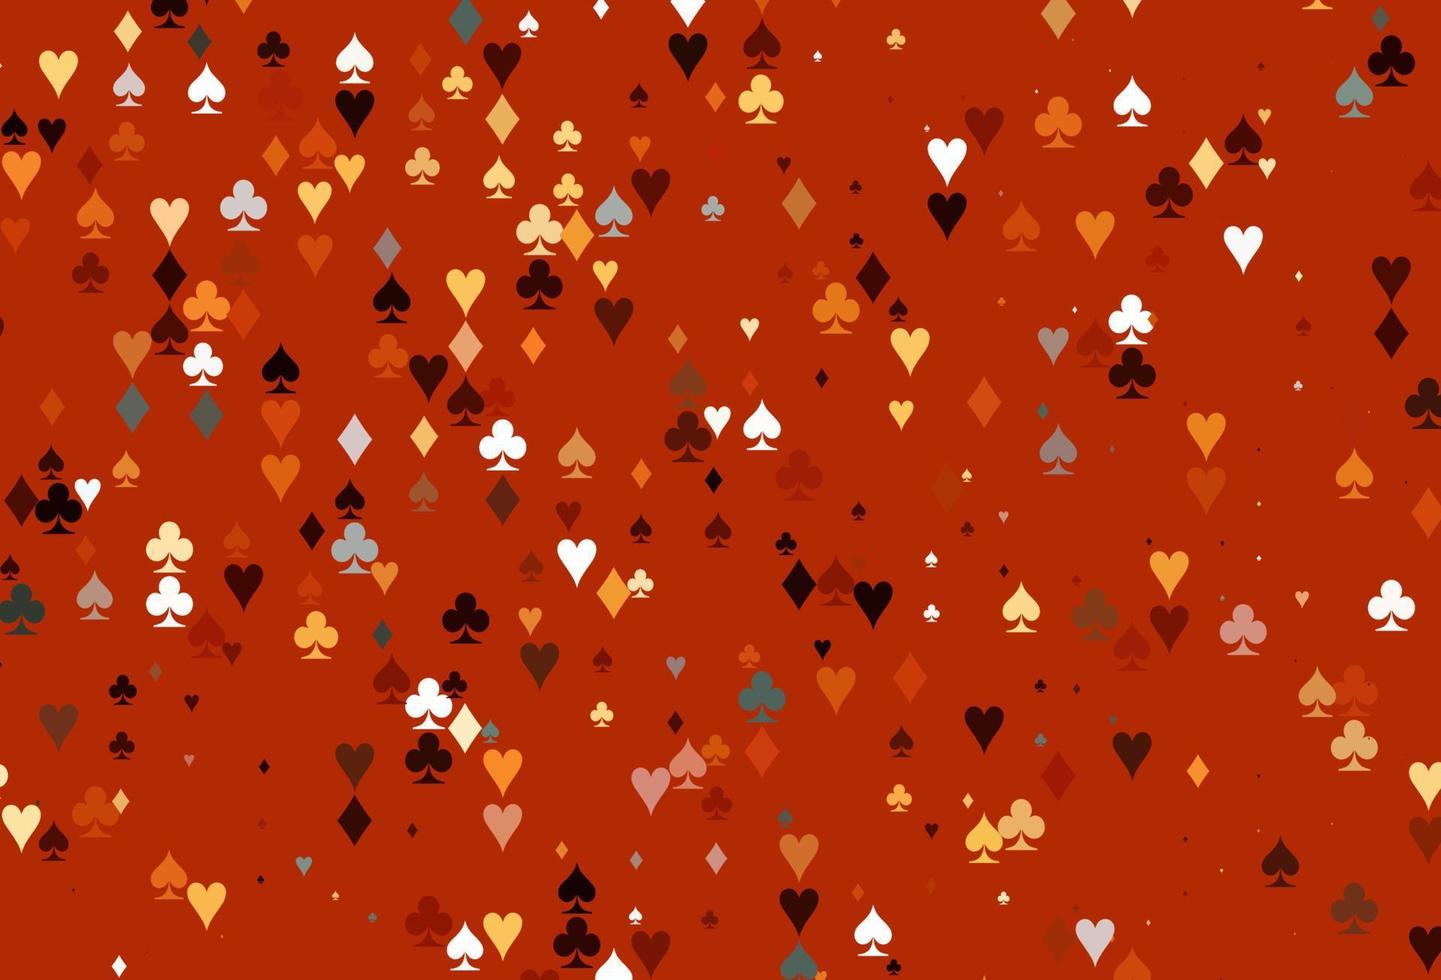 texture vettoriale arancione chiaro con carte da gioco.